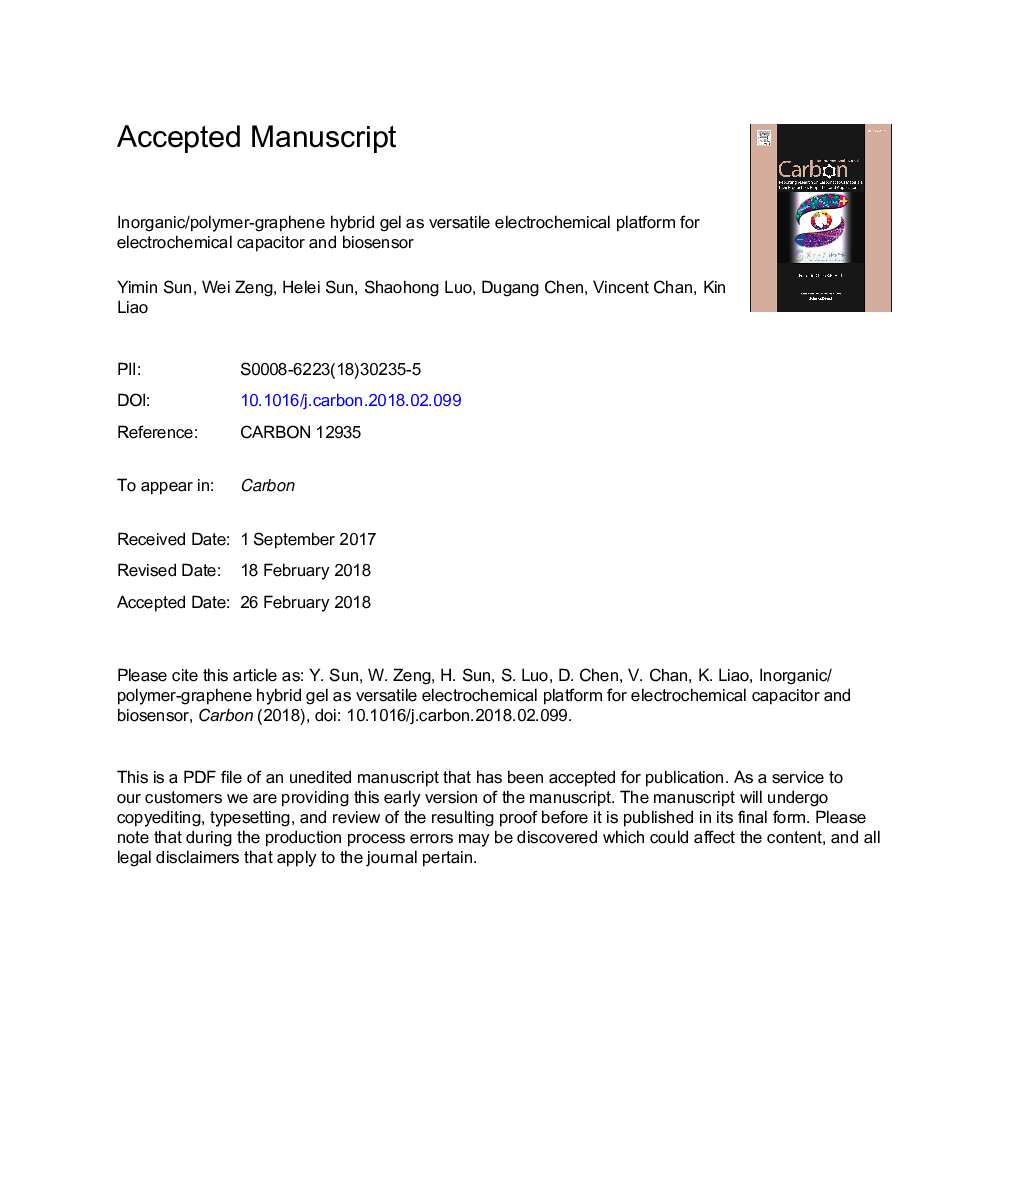 ژل هیبرید غیر معدنی / پلیمر-گرافین به عنوان پلت فرم الکتروشیمیایی چند منظوره برای خازن الکتروشیمیایی و بیوسنسور 